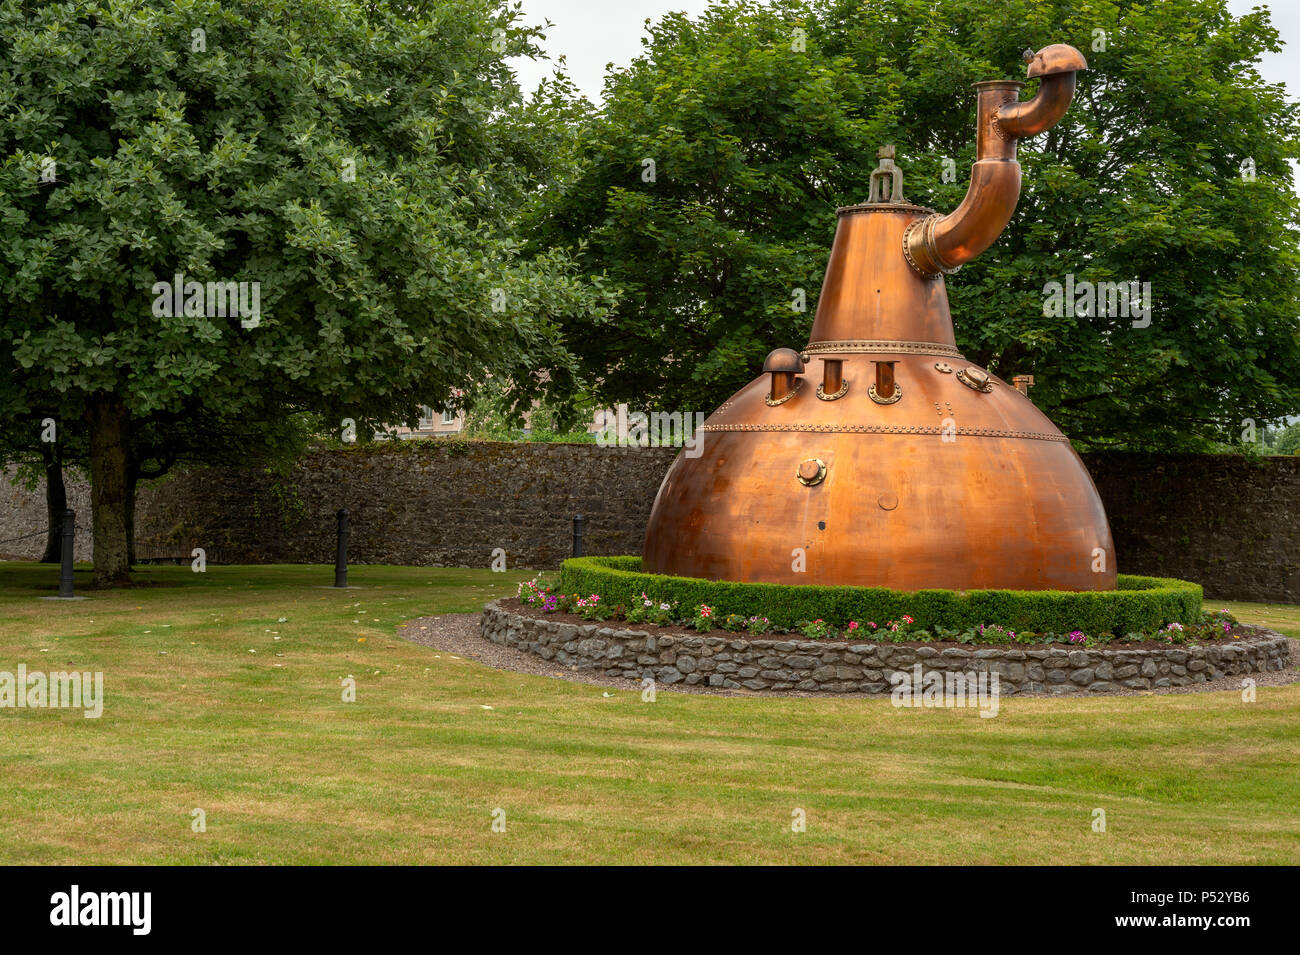 L'emblématique Pot de cuivre à l'entrée de la distillerie Old Jameson Whiskey à Midleton, comté de Cork, Irlande. Visite Jameson Experience. Banque D'Images